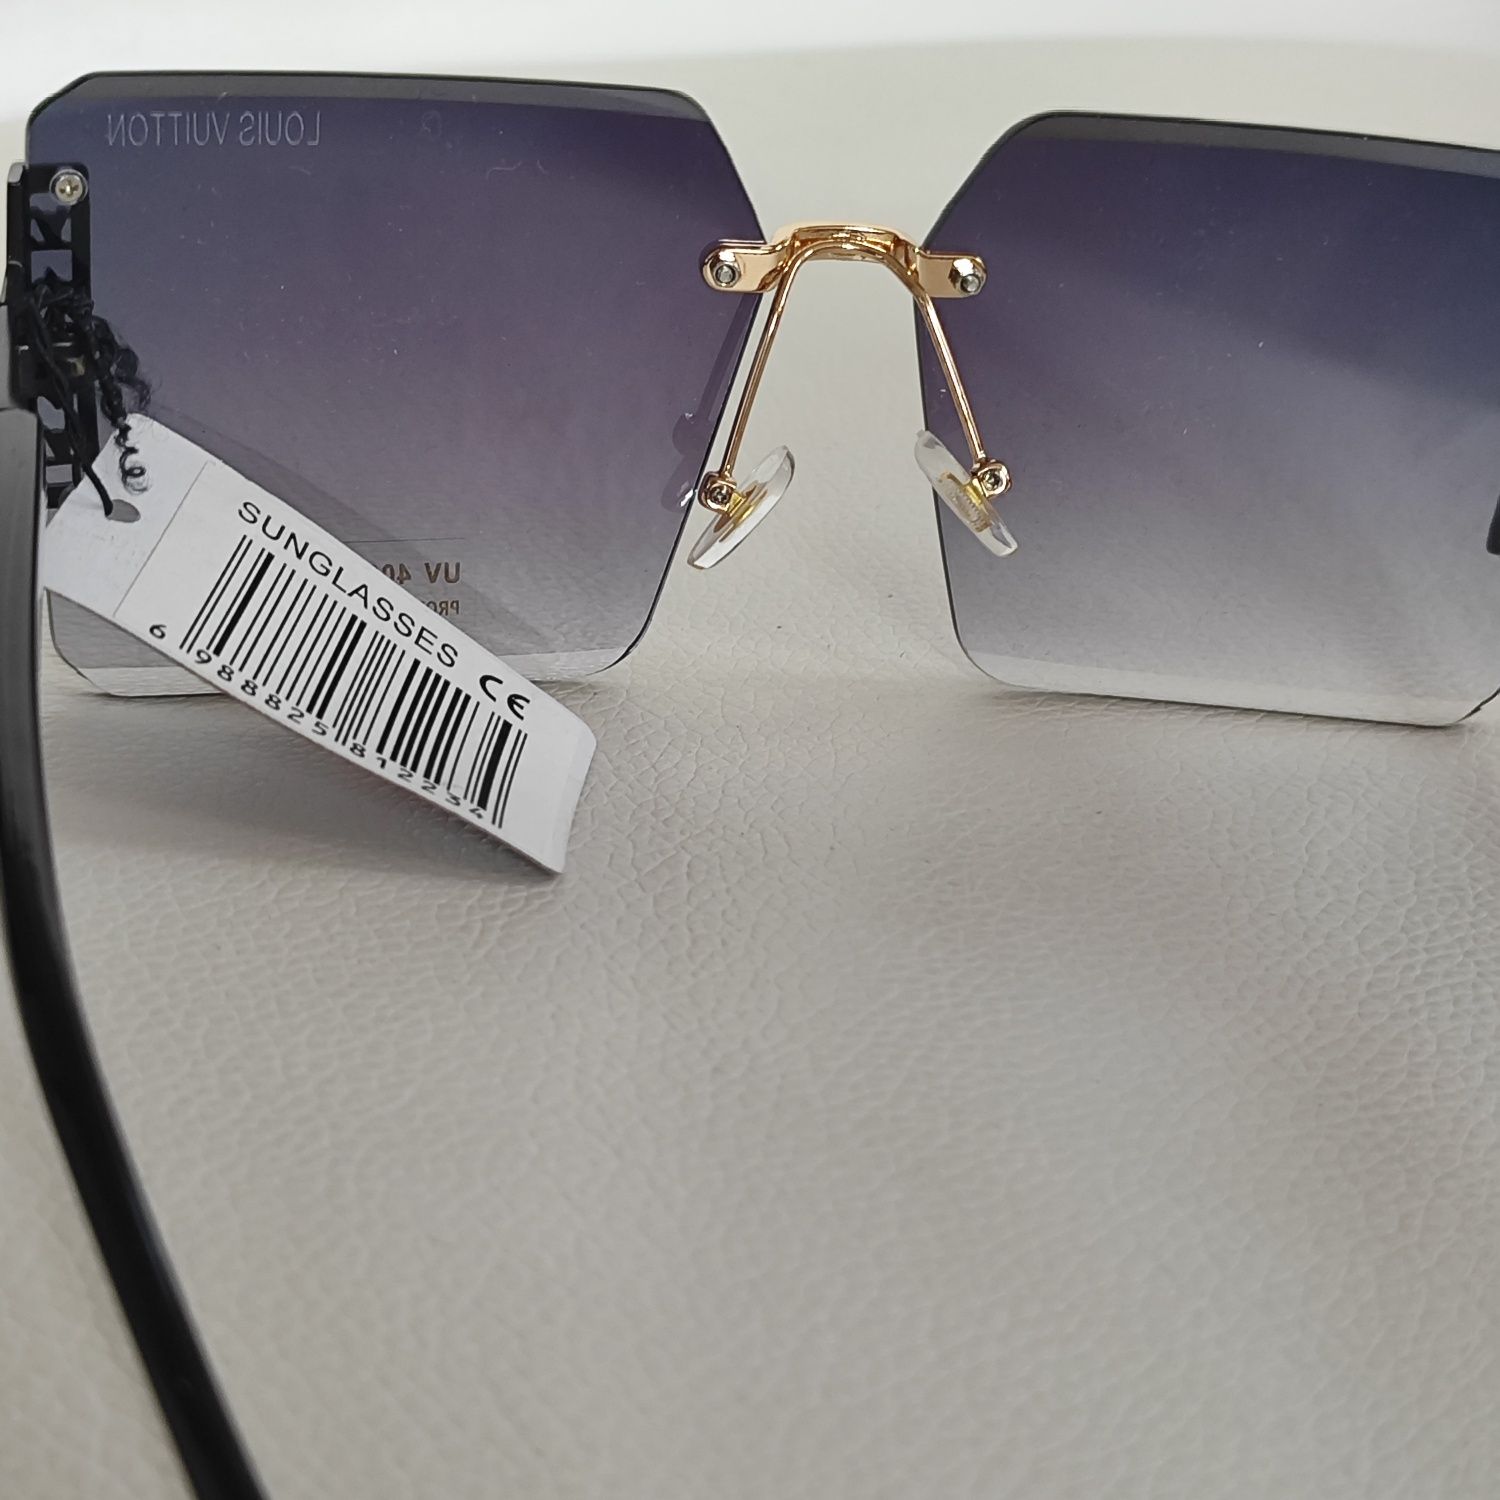 Okulary Lv Louis Vuitton damskie fioletowe okularki UV400 ochrona